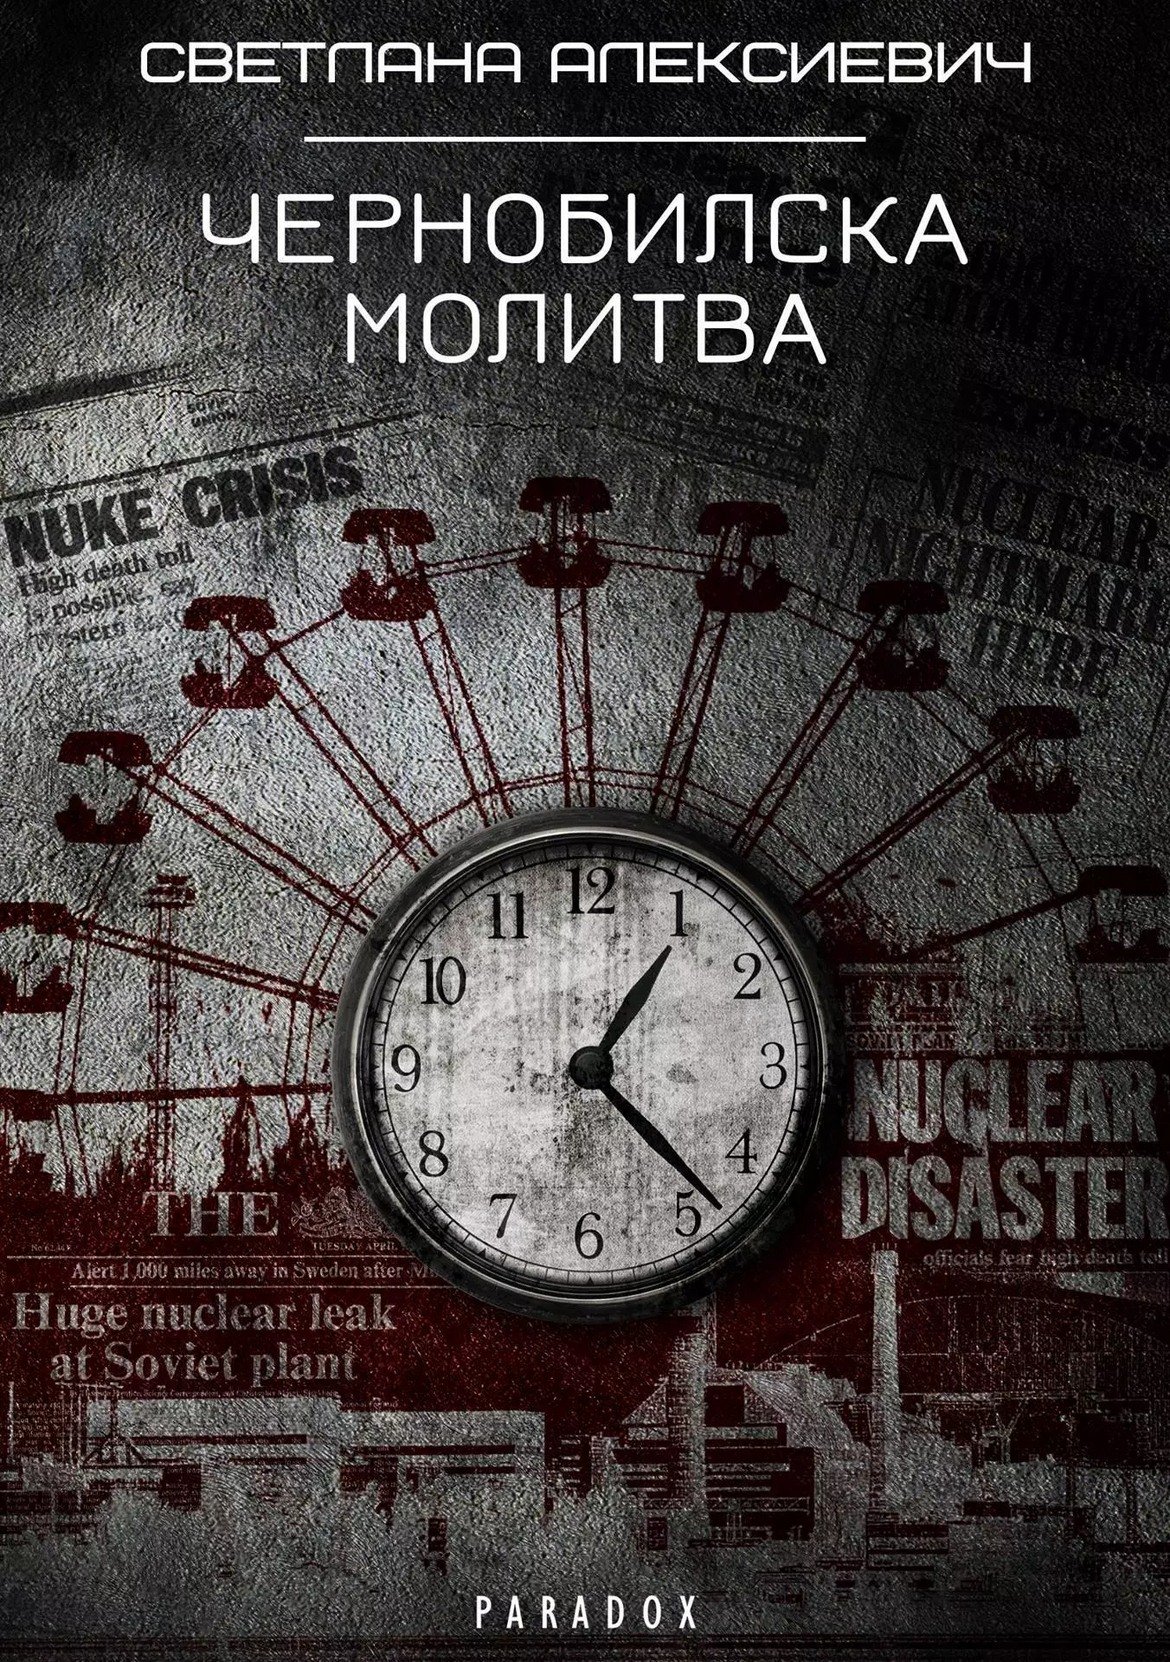 "Чернобилска молитва",
Светлана Алексиевич
изд. Парадокс

Тази книга има завиден живот в редакцията, след като присъстваше и в предната ни подобна галерия. Два месеца по-късно я чете друг член на екипа. Какъв по-подходящ момент - съвсем наскоро се навършиха 33 години от аварията в атомната централа "Чернобил", която в някаква степен промени света или поне отношението ни към ядрената енергия.

Алексиевич обаче се фокусира не върху самата авария, а върху историите на хората, чиито съдби "Чернобил" е белязал. Тук са гласовете на десетки хора, чиито молитви не могат да бъдат чути, защото повечето от тях са останали завинаги в обезлюдената зона около реактора. Или в съседните градове, където са изселени жителите на Припят. Някои от тях не съзнават сериозността на положението, други страдат, трети са се примирили. Но всички са обединени от едно - те искат Светлана Алексиевич да документира разказите им. За доброто на тези след тях. За наше добро.